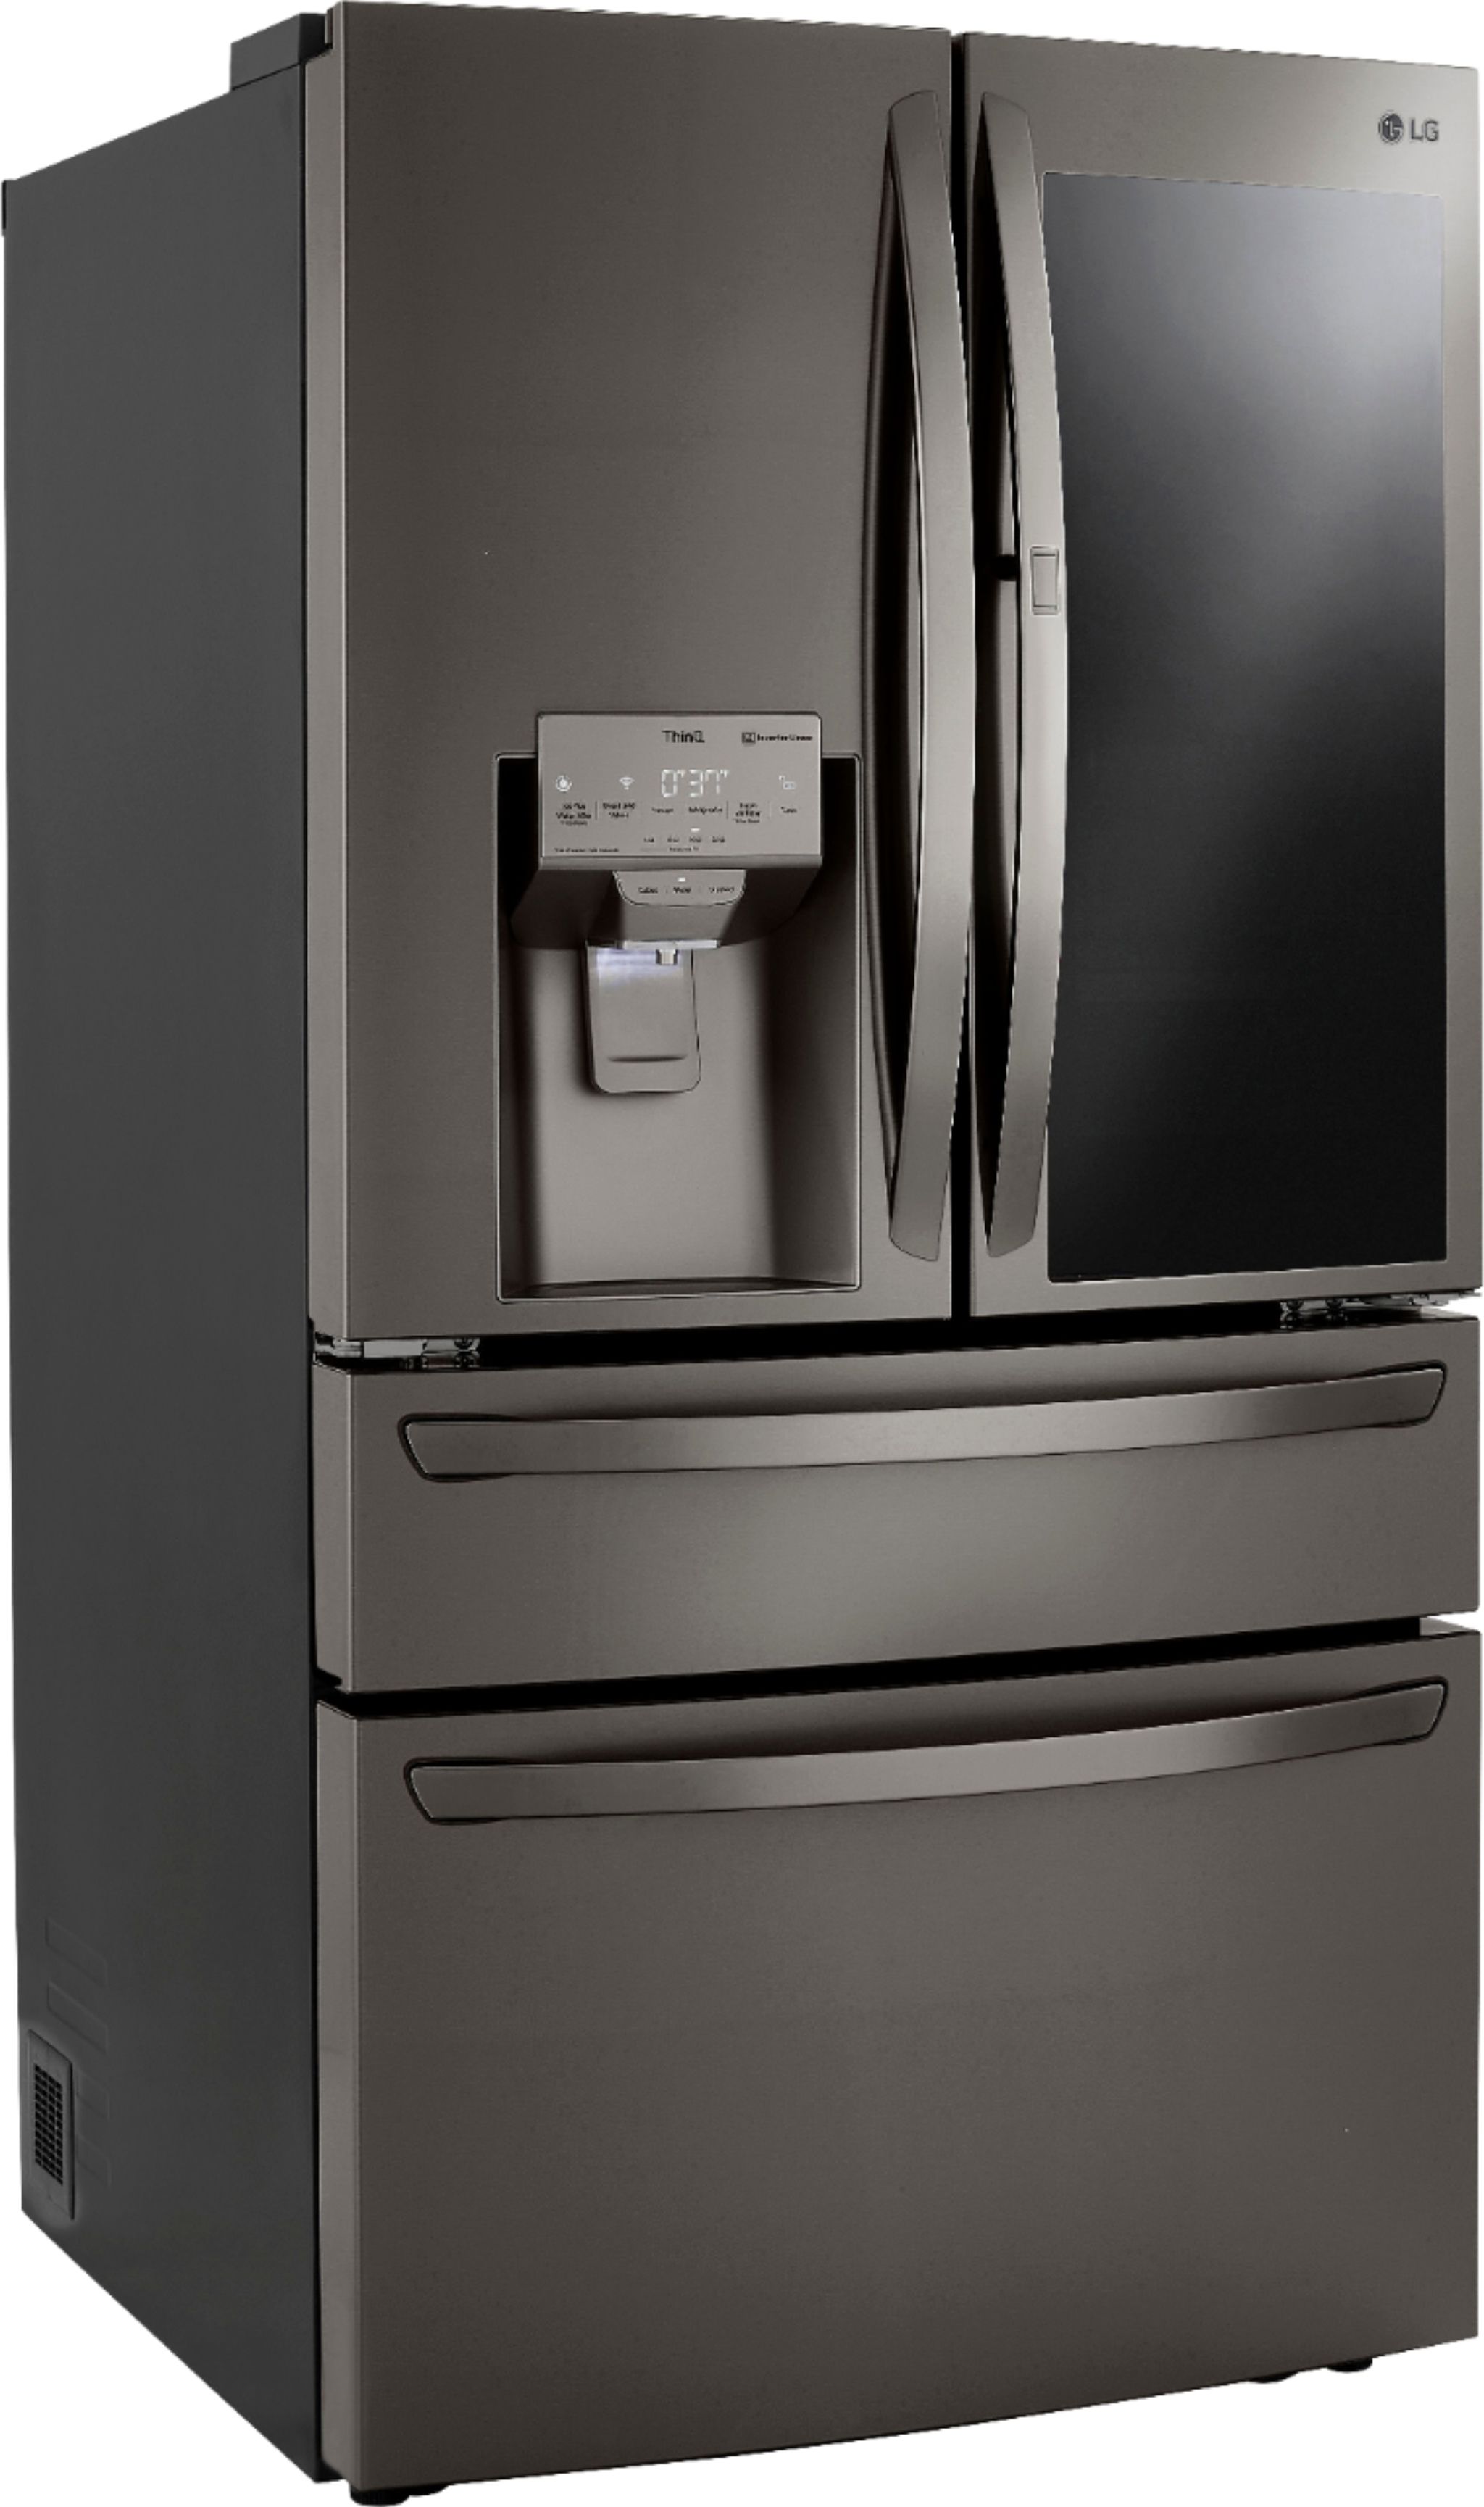 LG 22.5 Cu. Ft. 4-Door French Door Counter-Depth Refrigerator with Lg French Door Black Stainless Steel Refrigerator